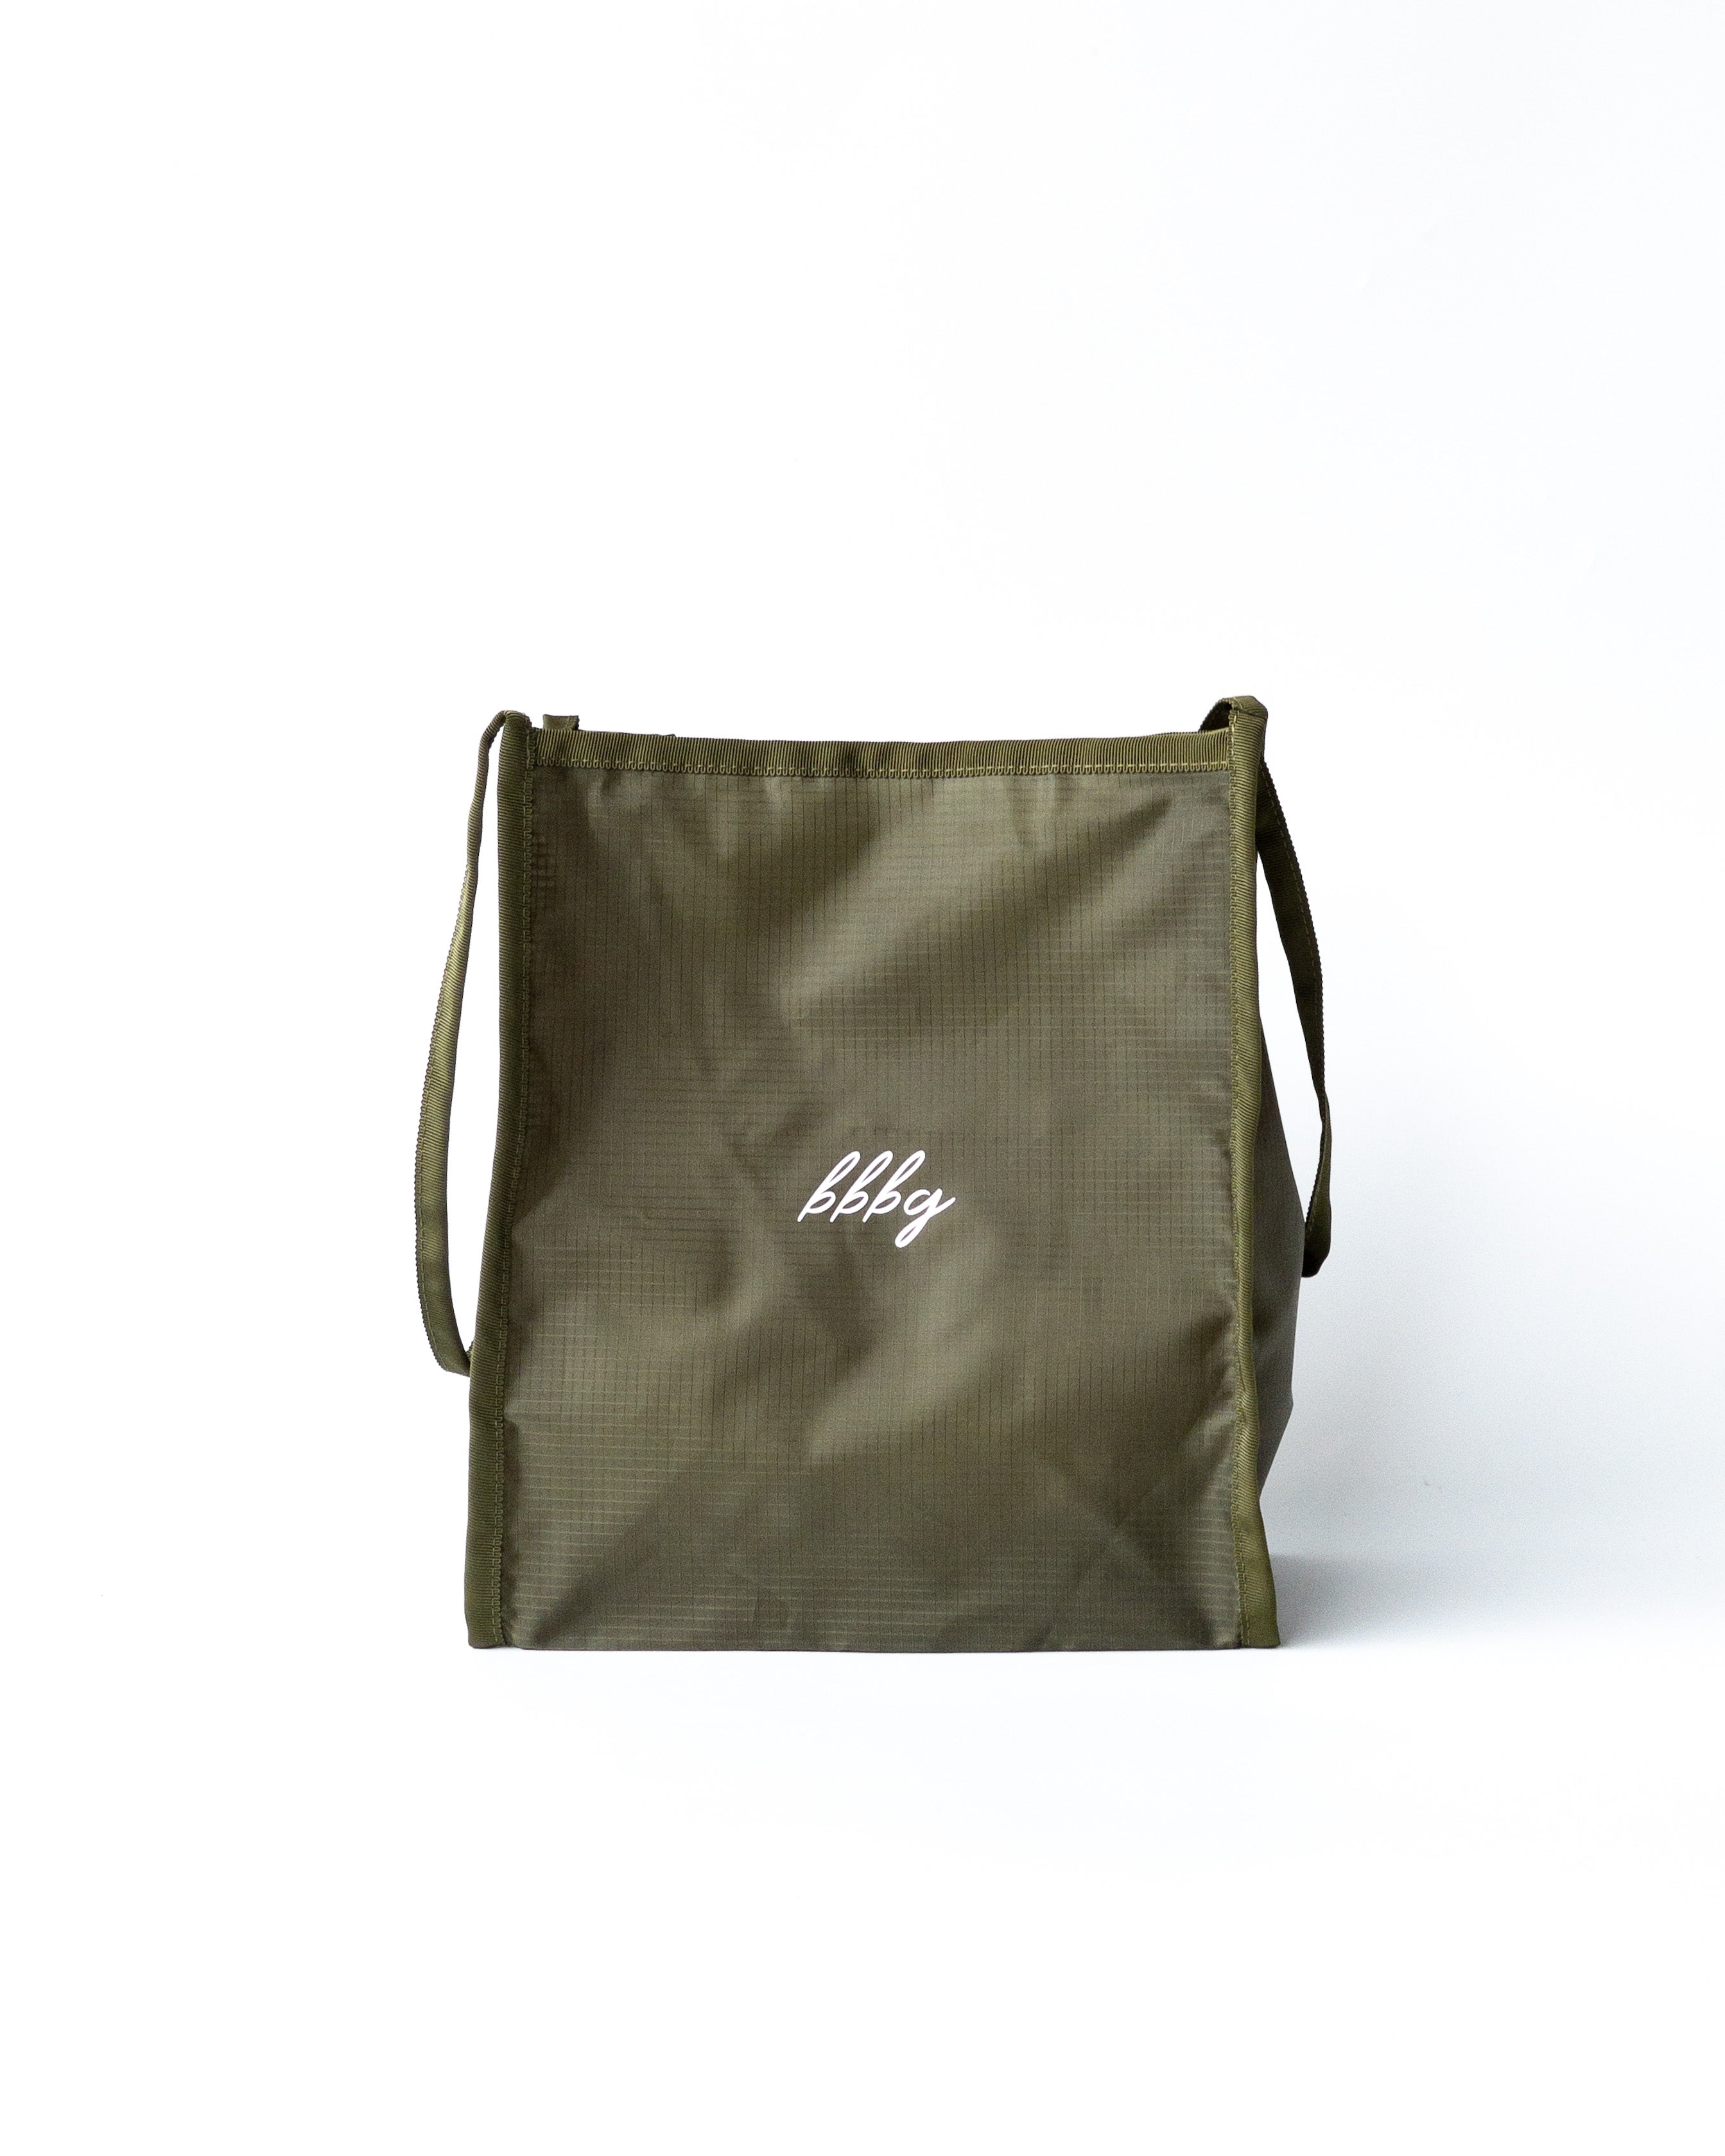 [BBBg] Original Eco Bag